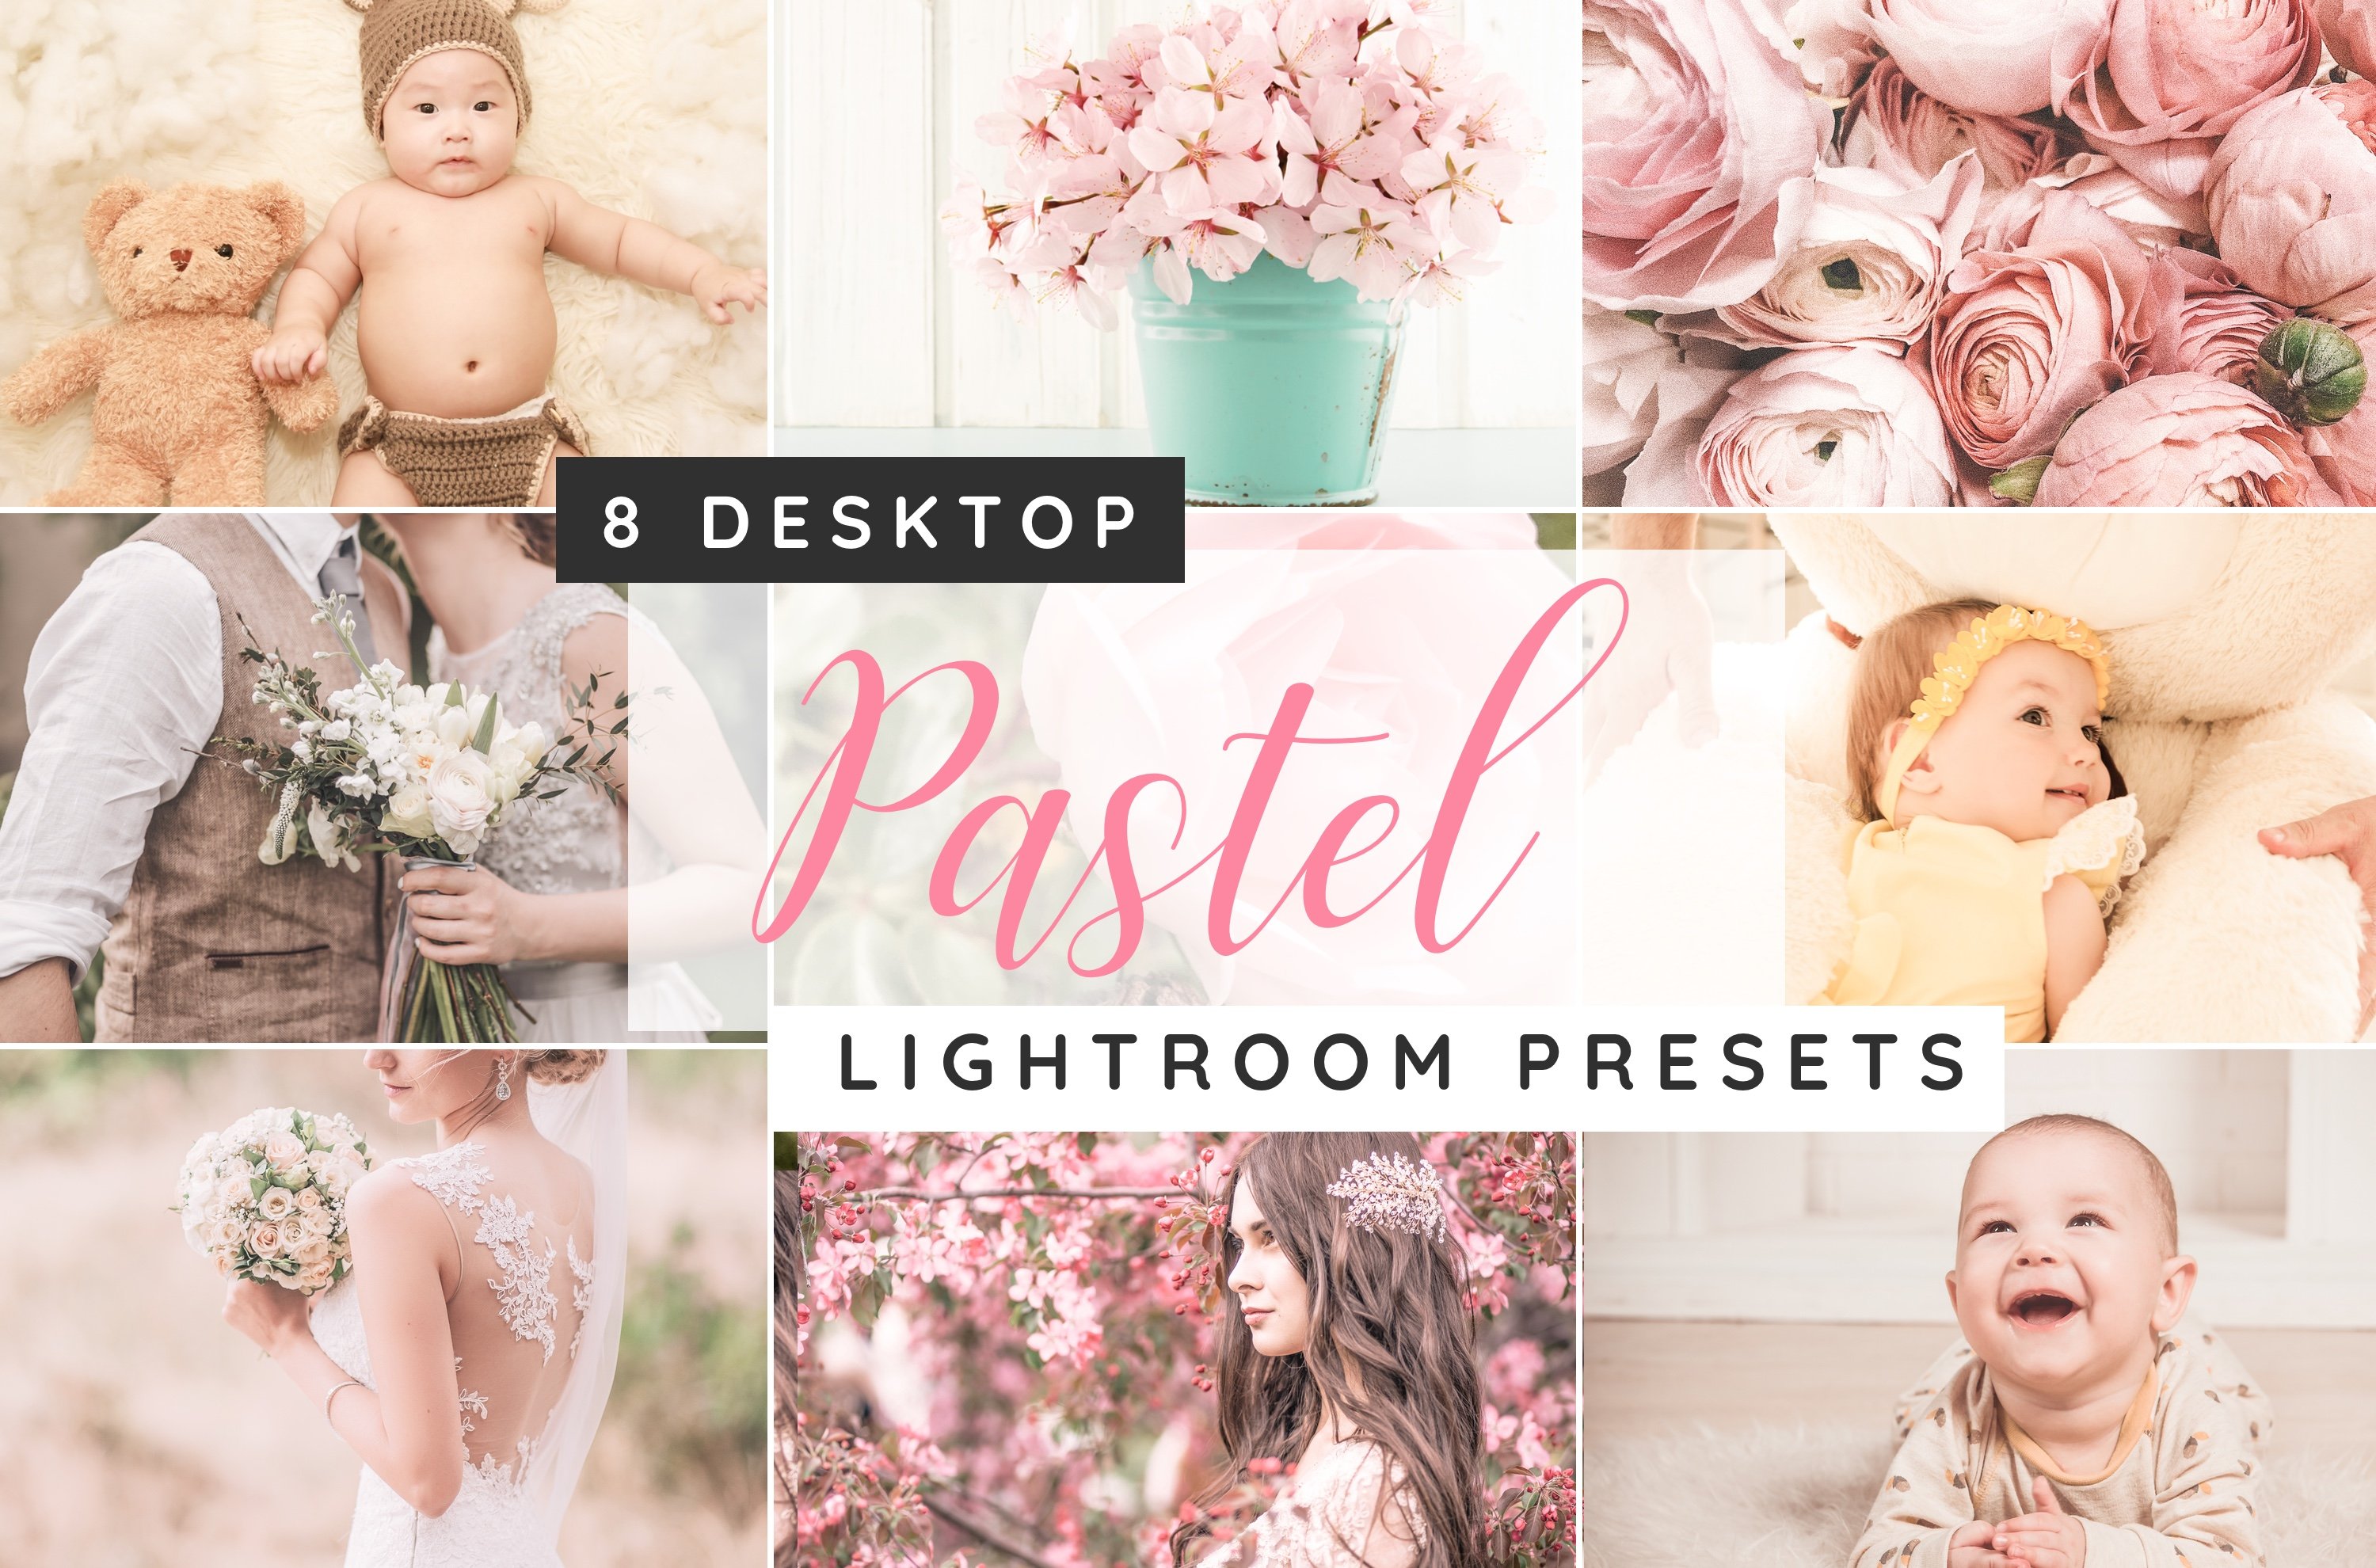 Lightroom pastel desktop presetscover image.